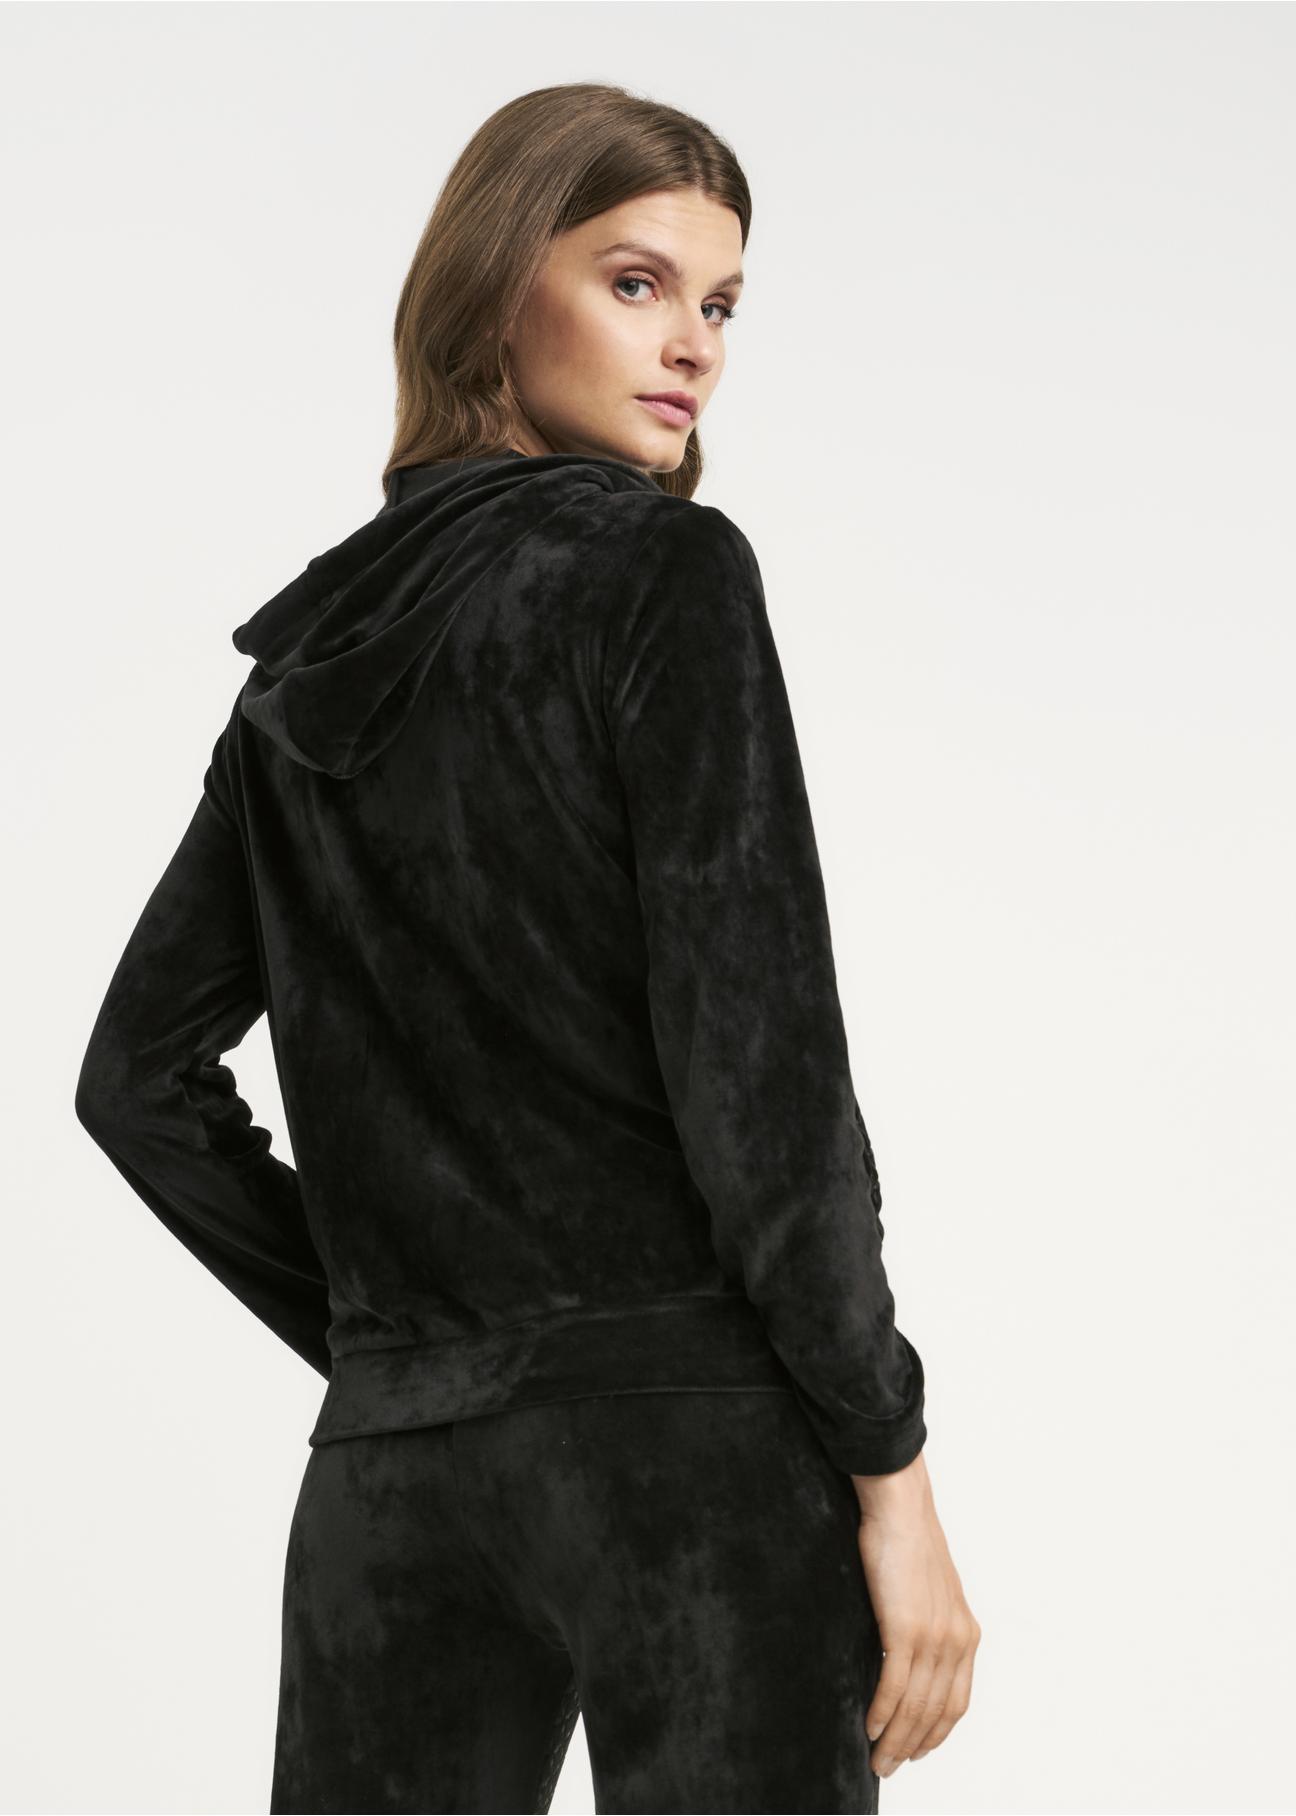 Czarna rozpinana bluza damska BLZDT-0081-99(Z22)